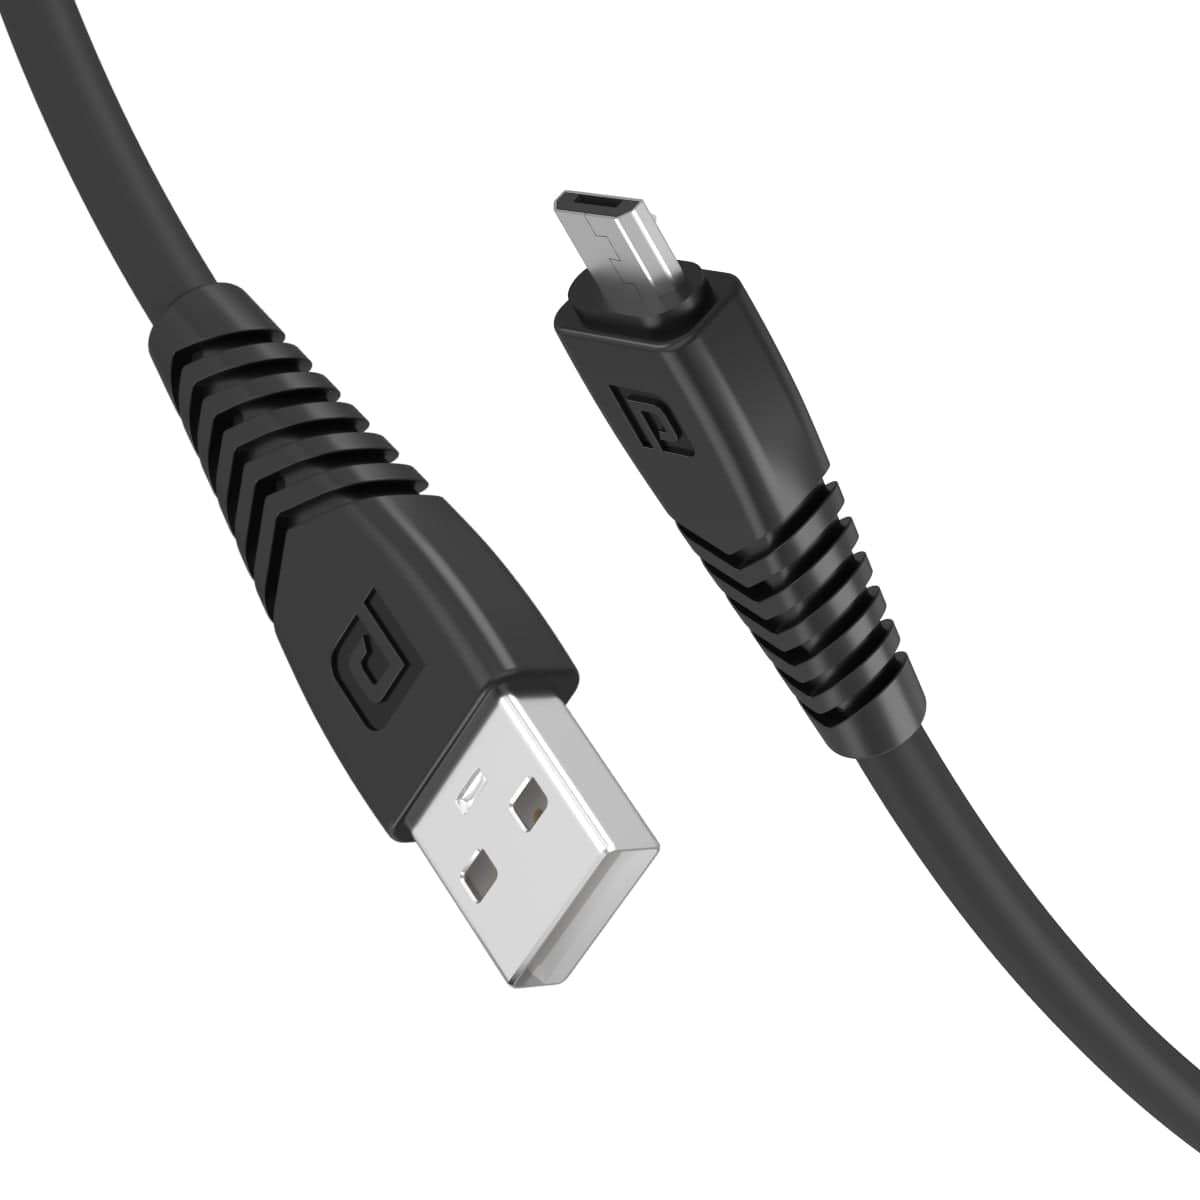 PORTRONICS-Konnect Core Micro USB Cable